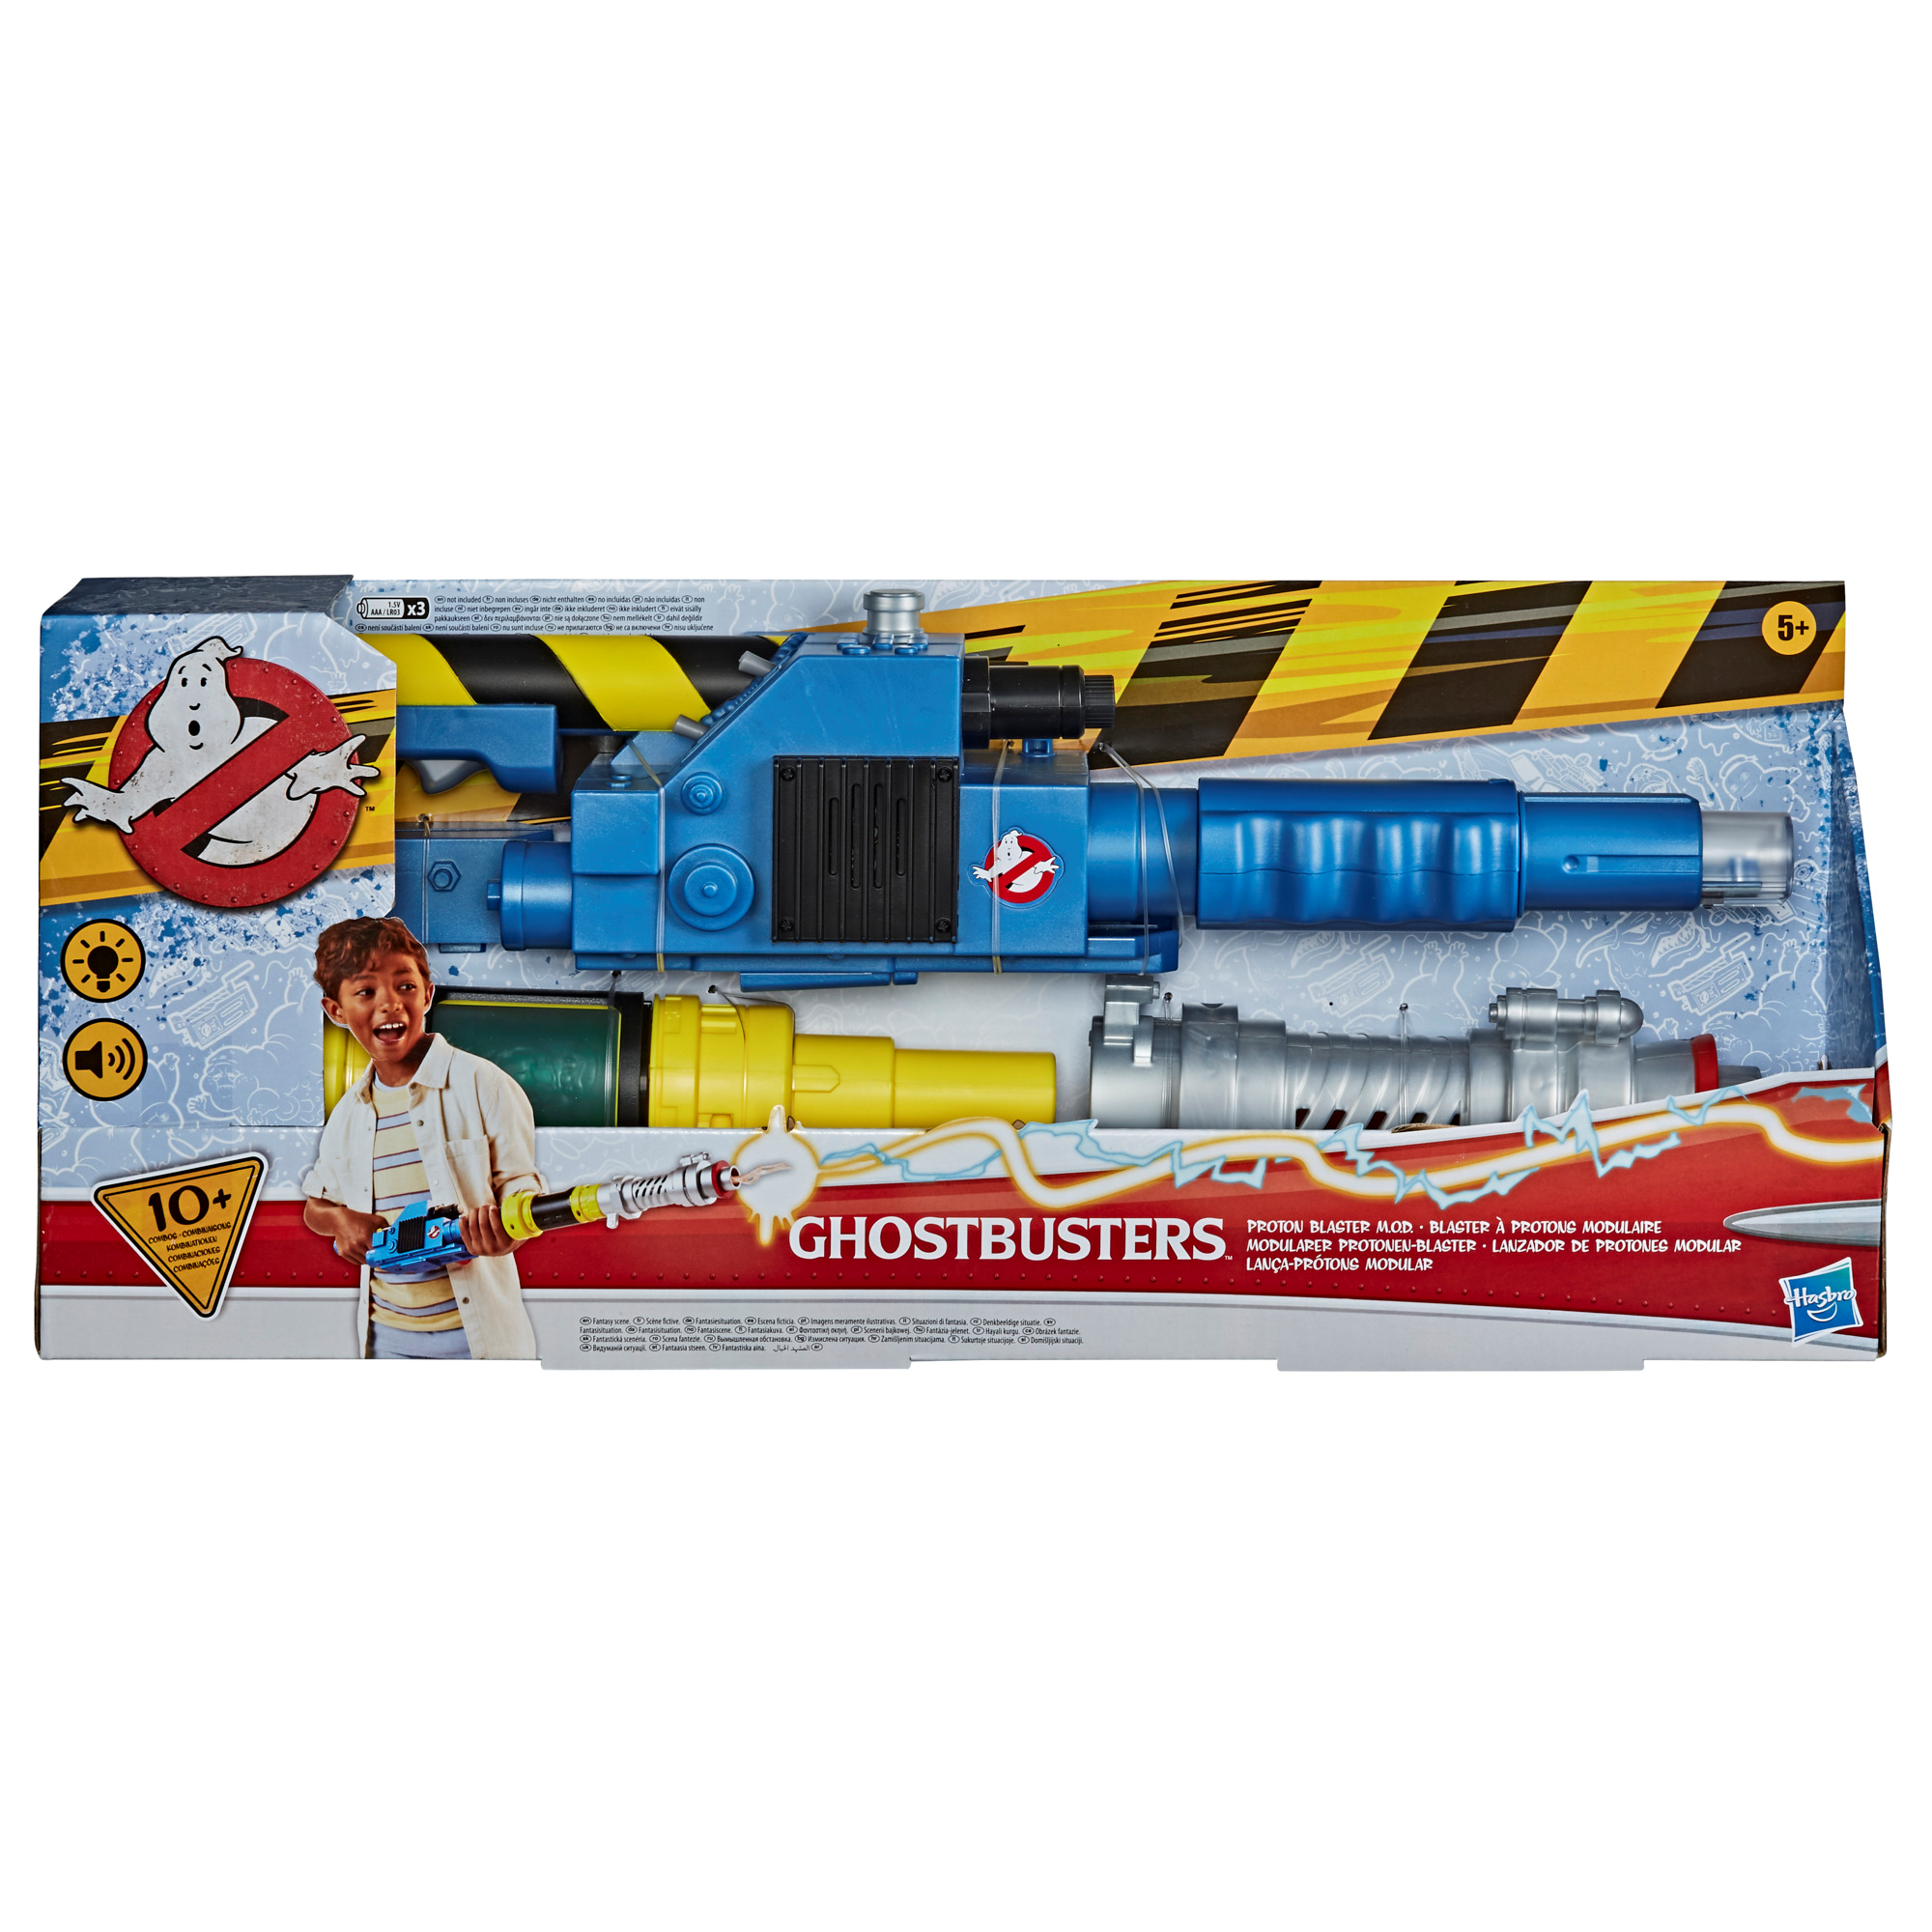 Hasbro ghostbusters - blaster protonico deluxe, giocattolo per gioco di ruolo personalizzabile con luci e suoni, ispirato al film ghostbusters, per bambini dai 5 anni in su - 